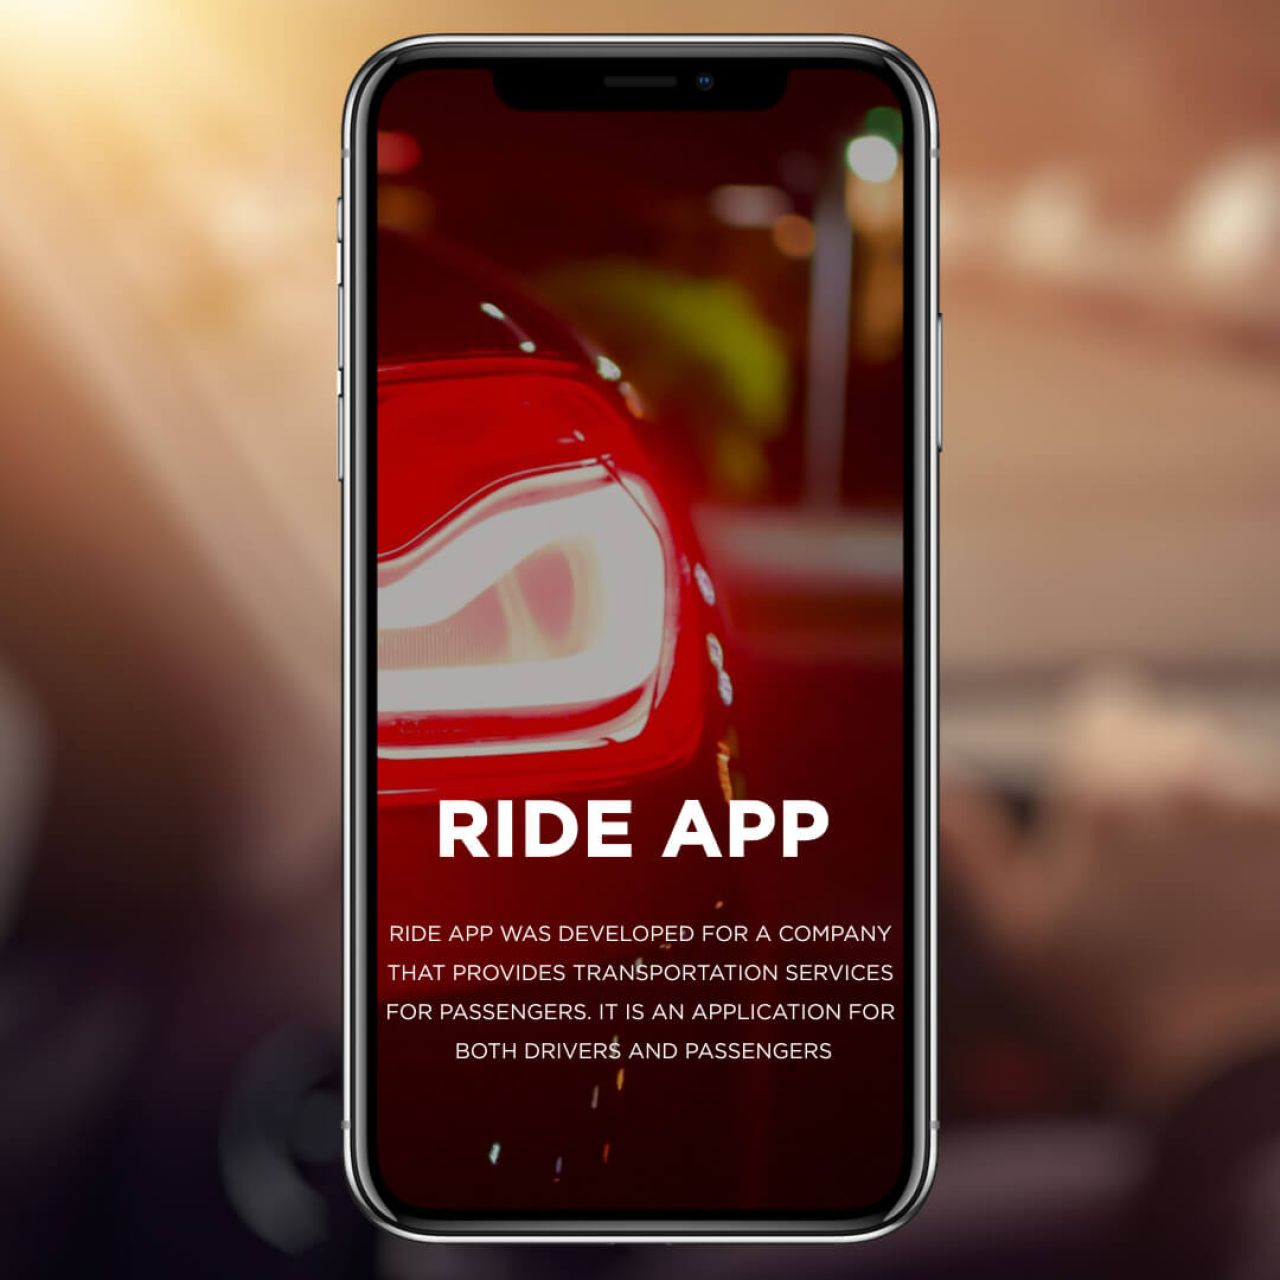 Ride App - Description